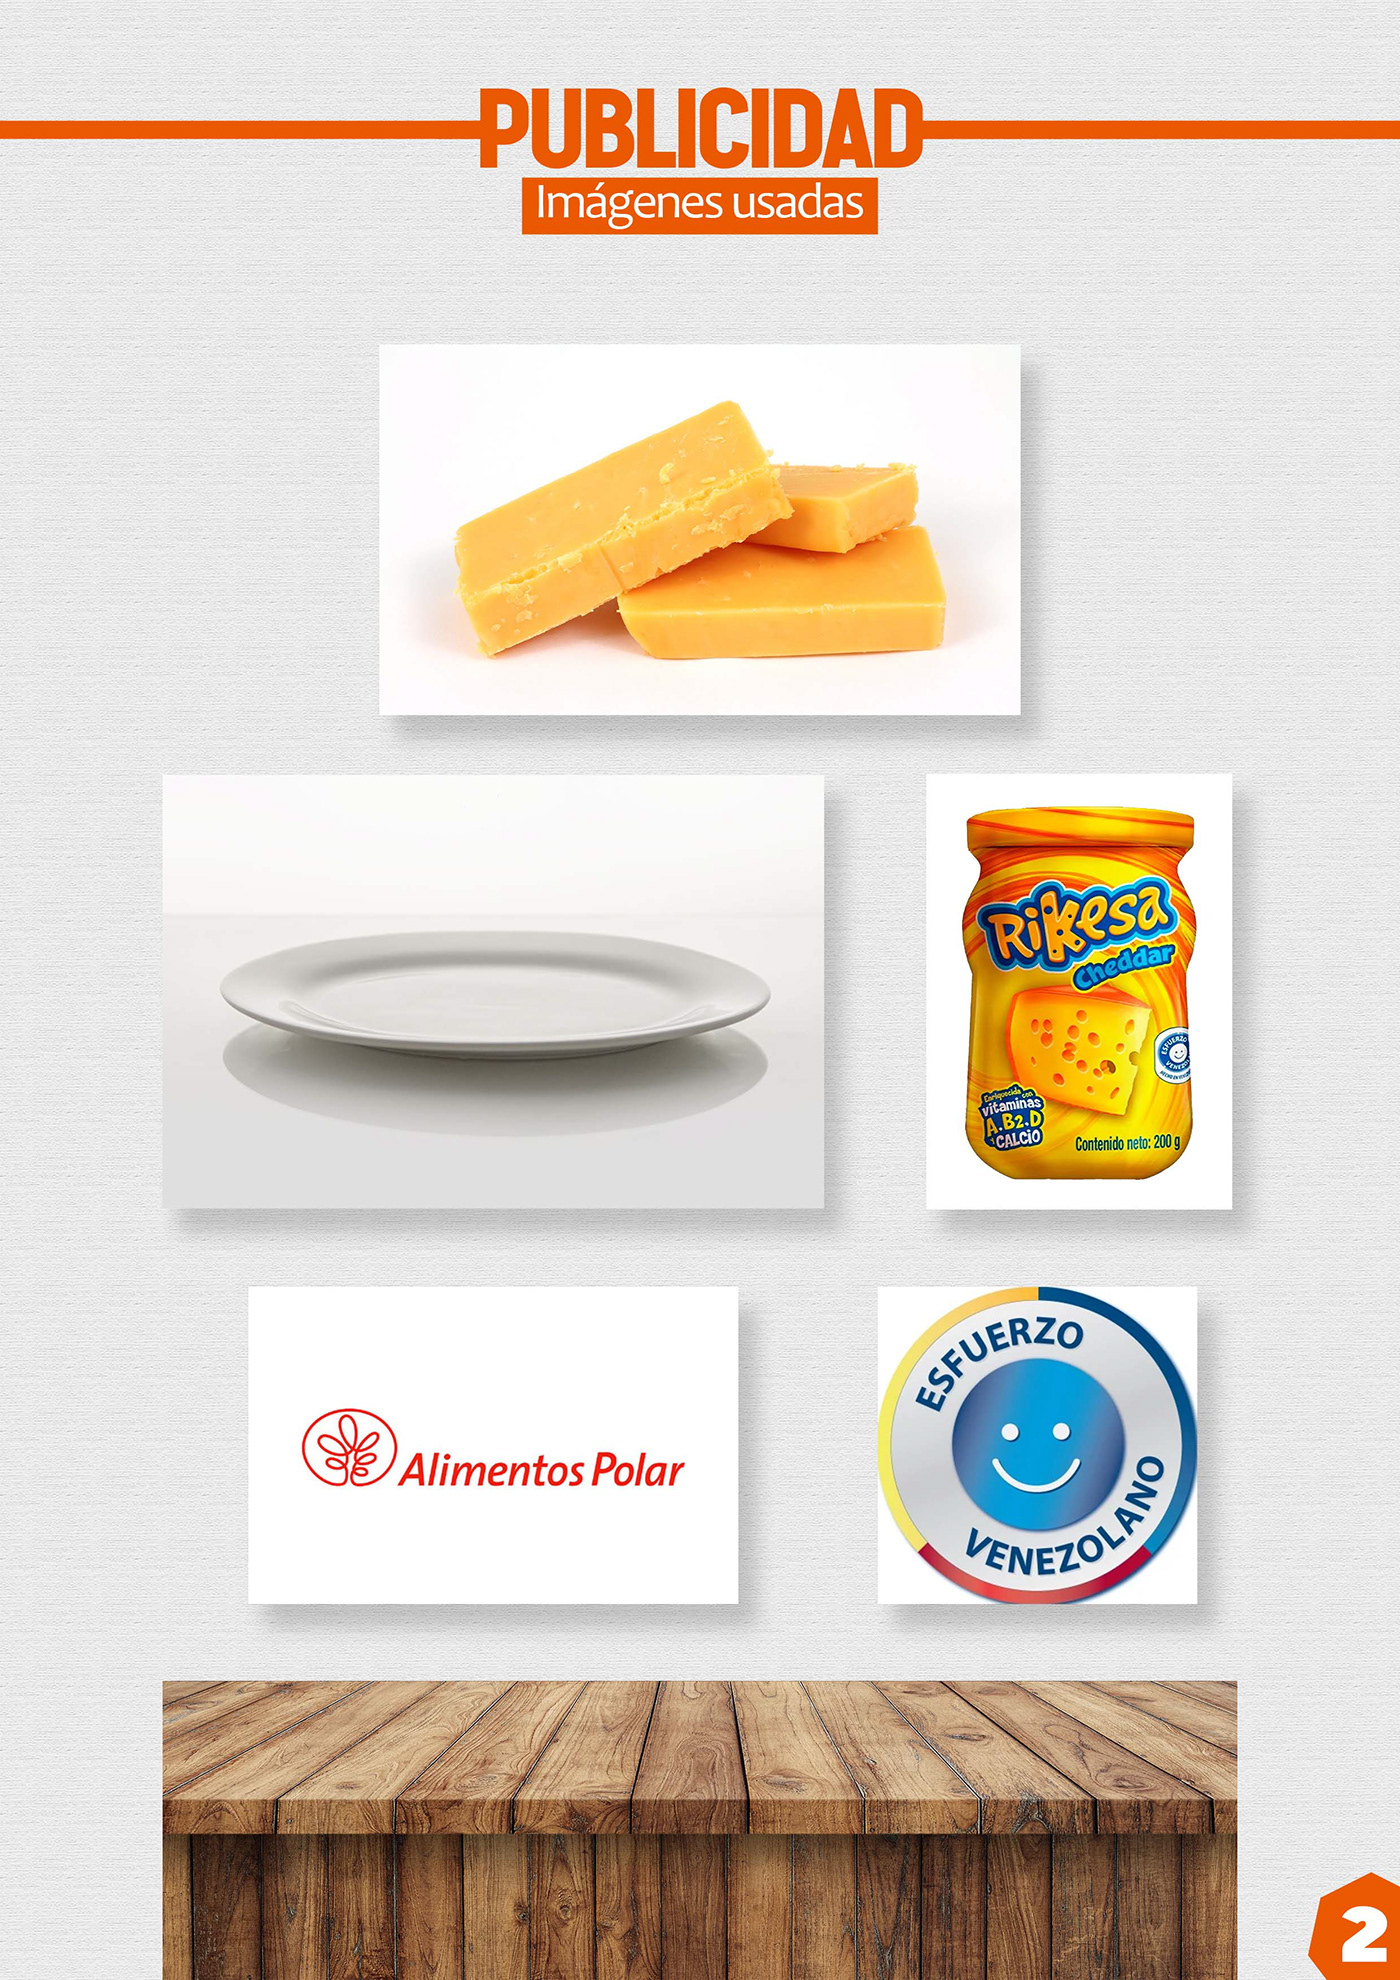 cheddar cheese social media Advertising  Socialmedia marketing  